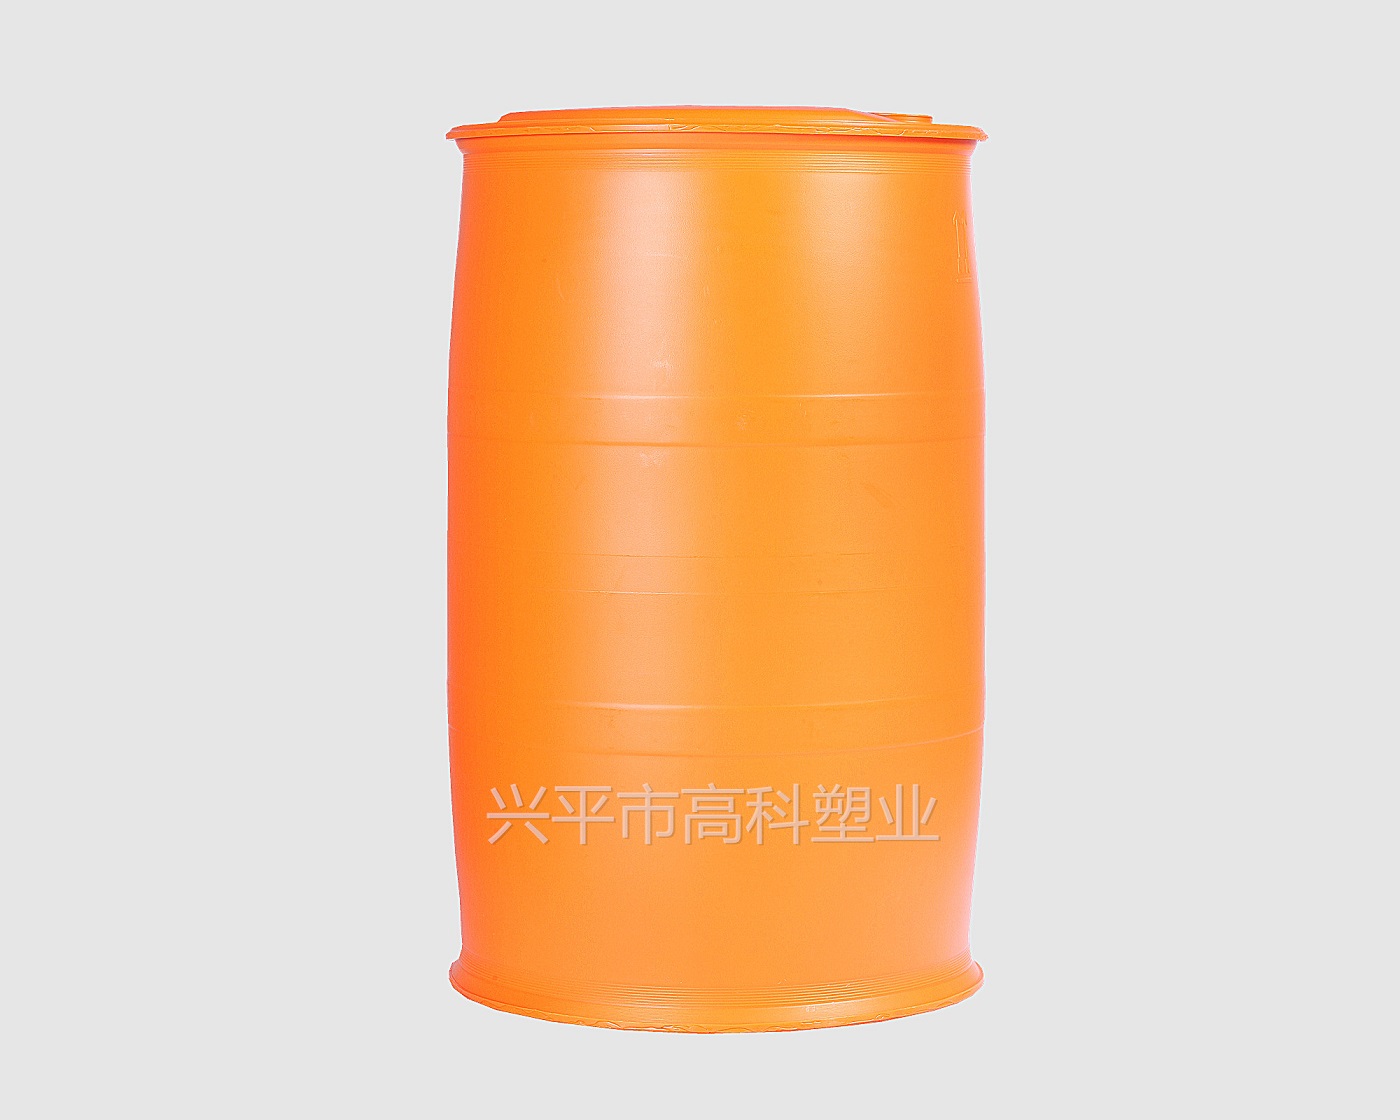 如何做好塑料桶的液体安装工序呢？